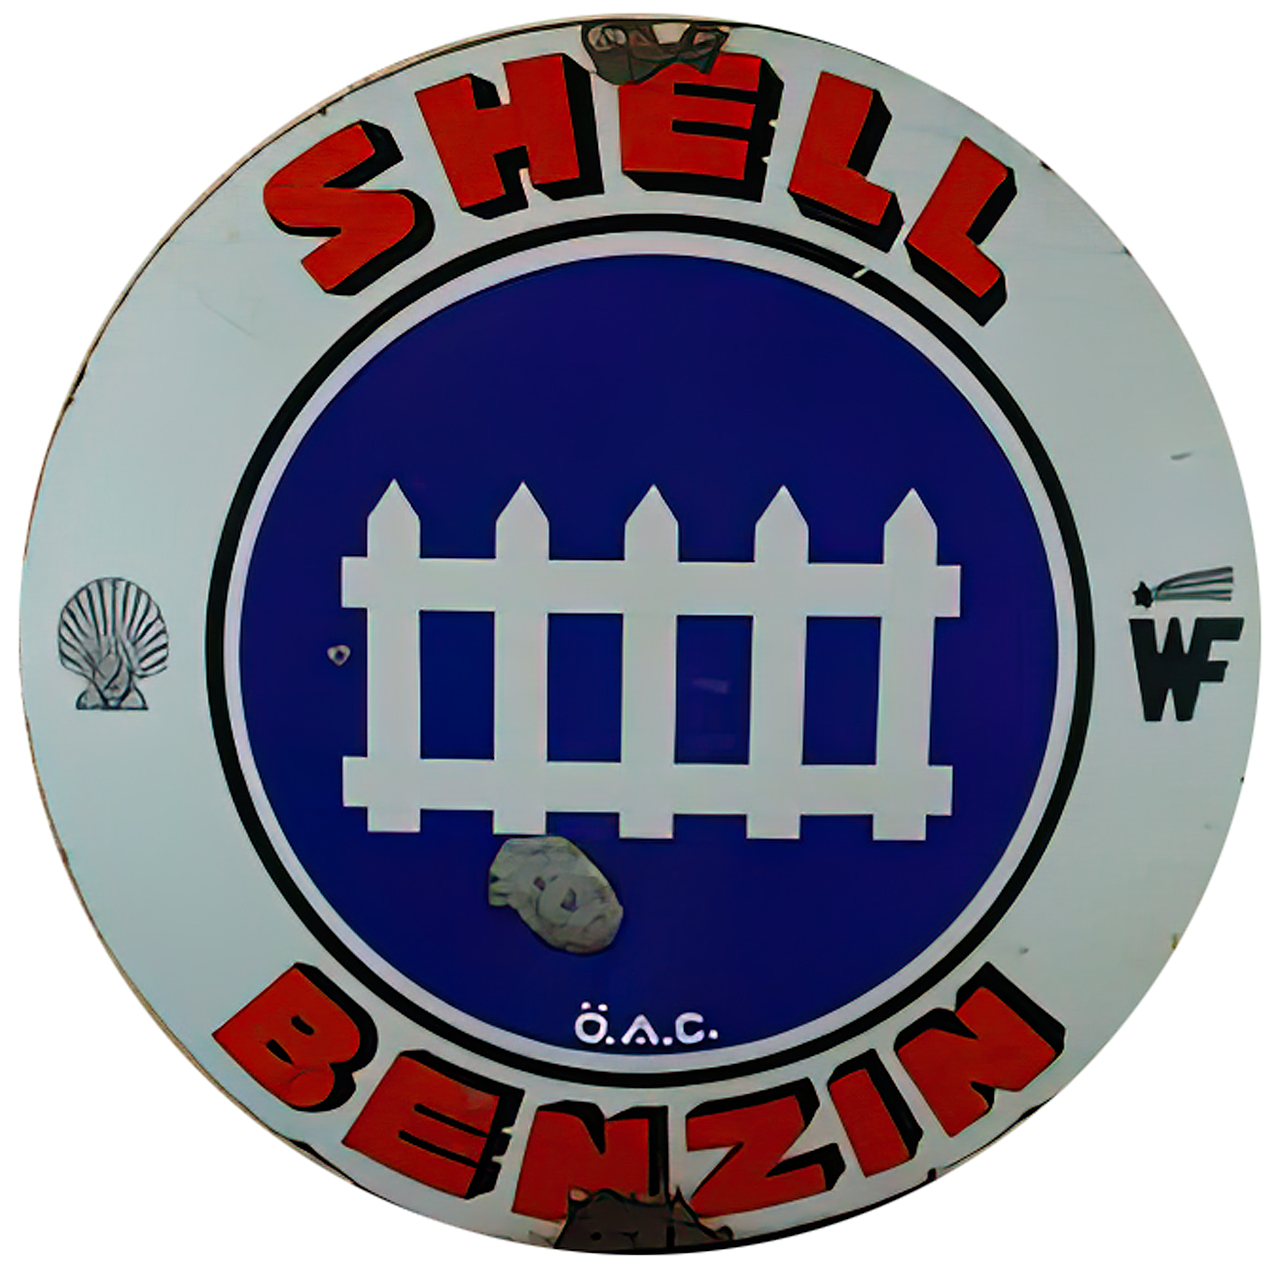 Shell-Benz